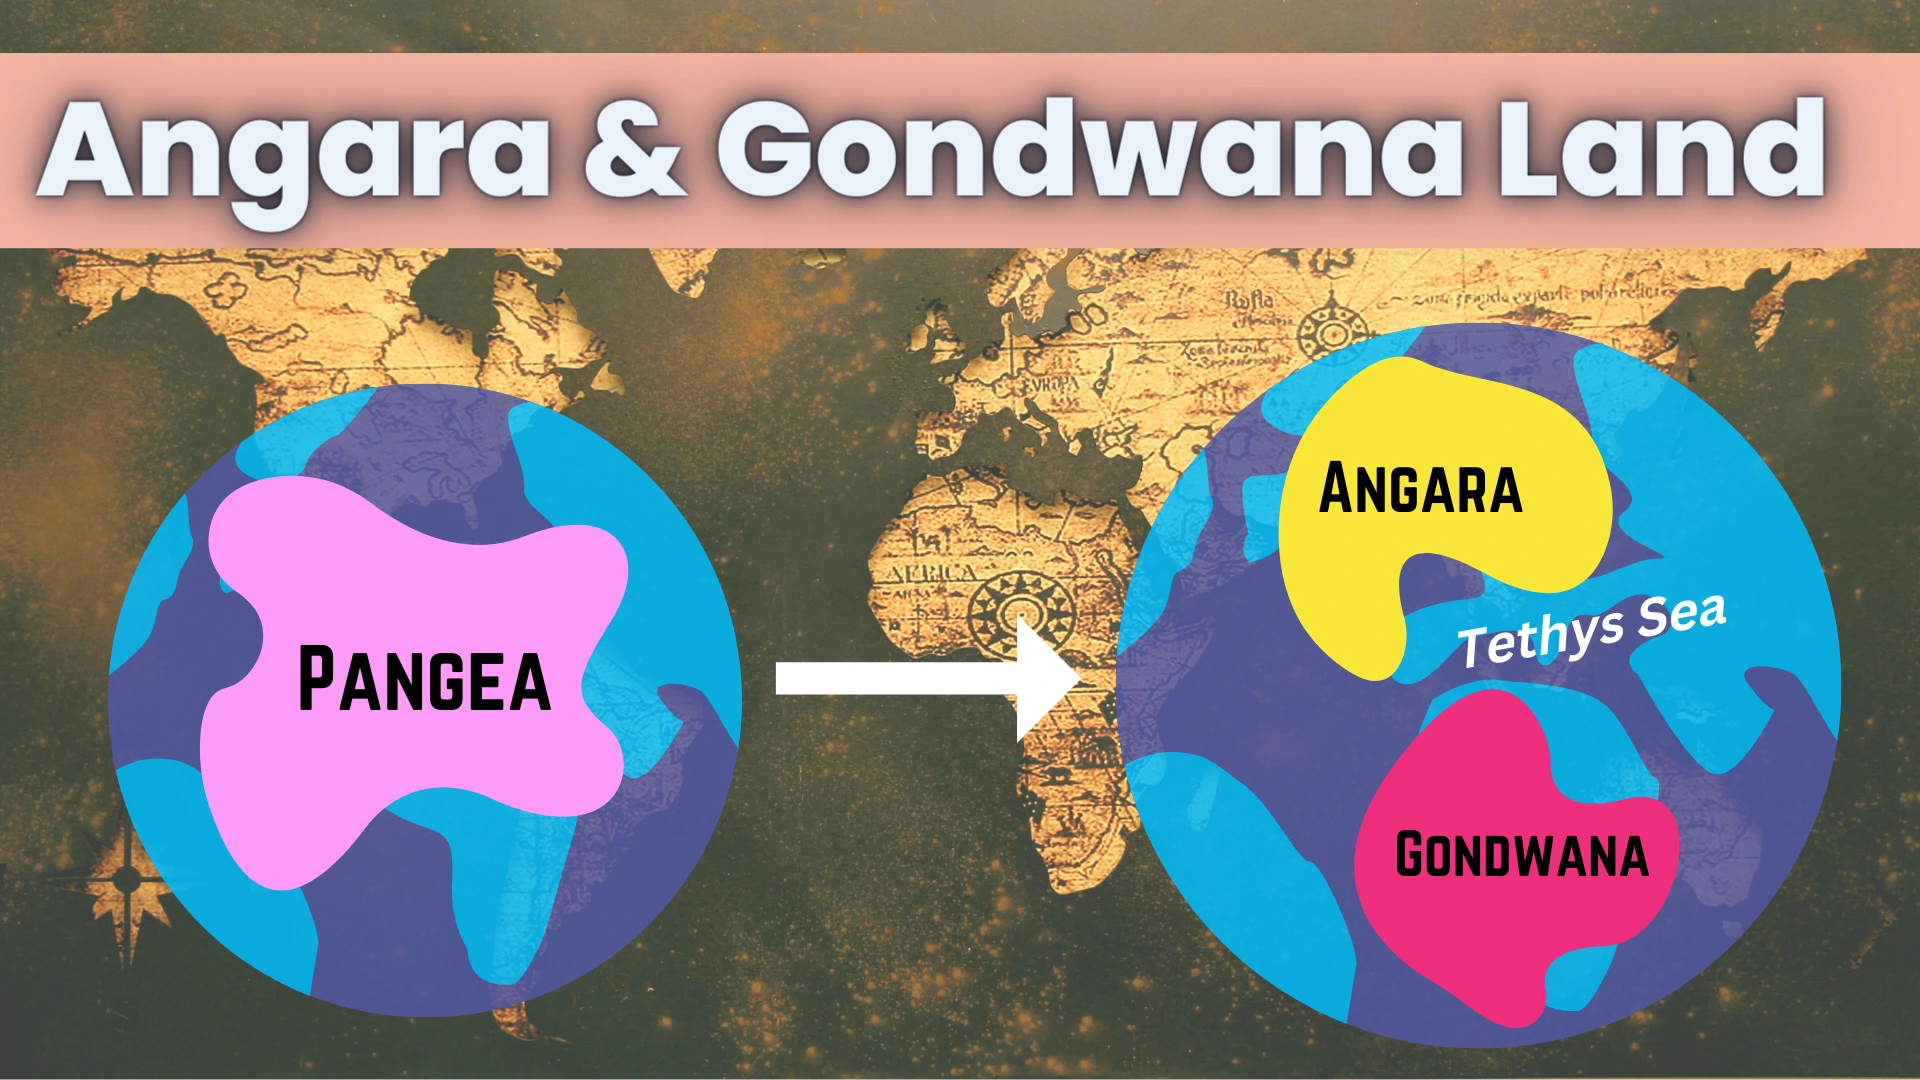 Pangea, Laurasia, Angara & Gondwana Land - Supercontinents | UPSC